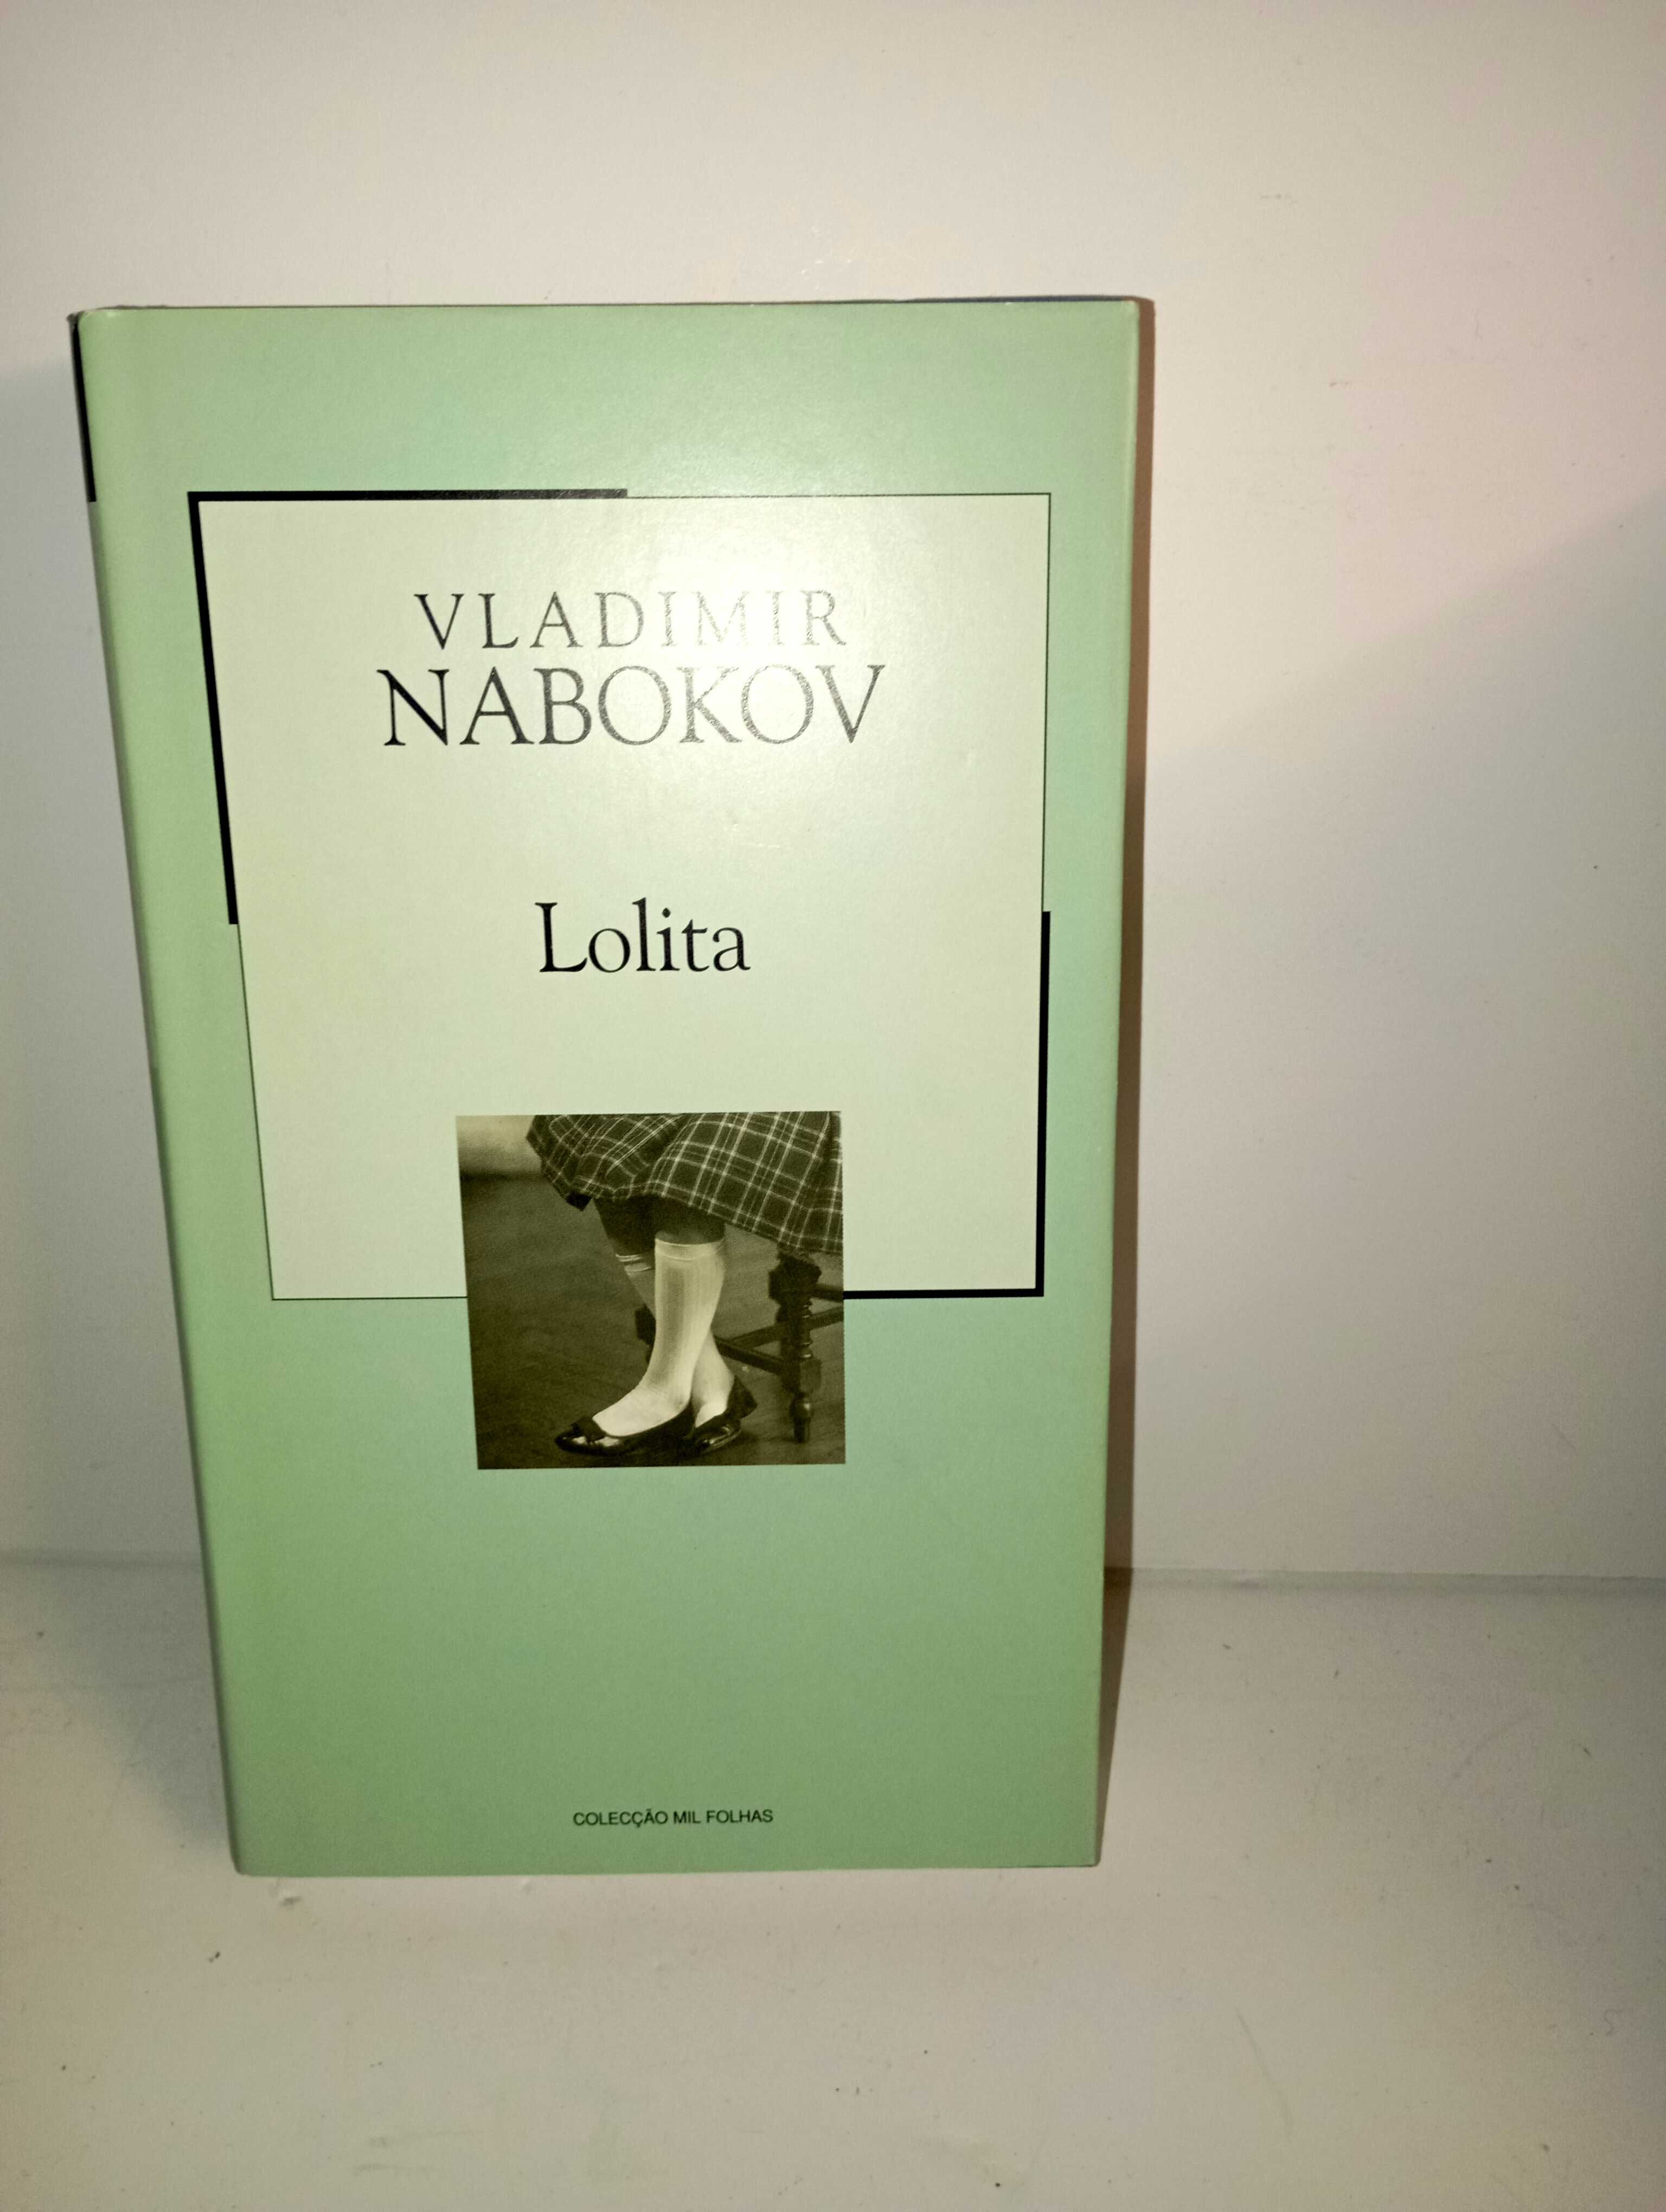 Lolita - Livro de Vladimir NaboKov